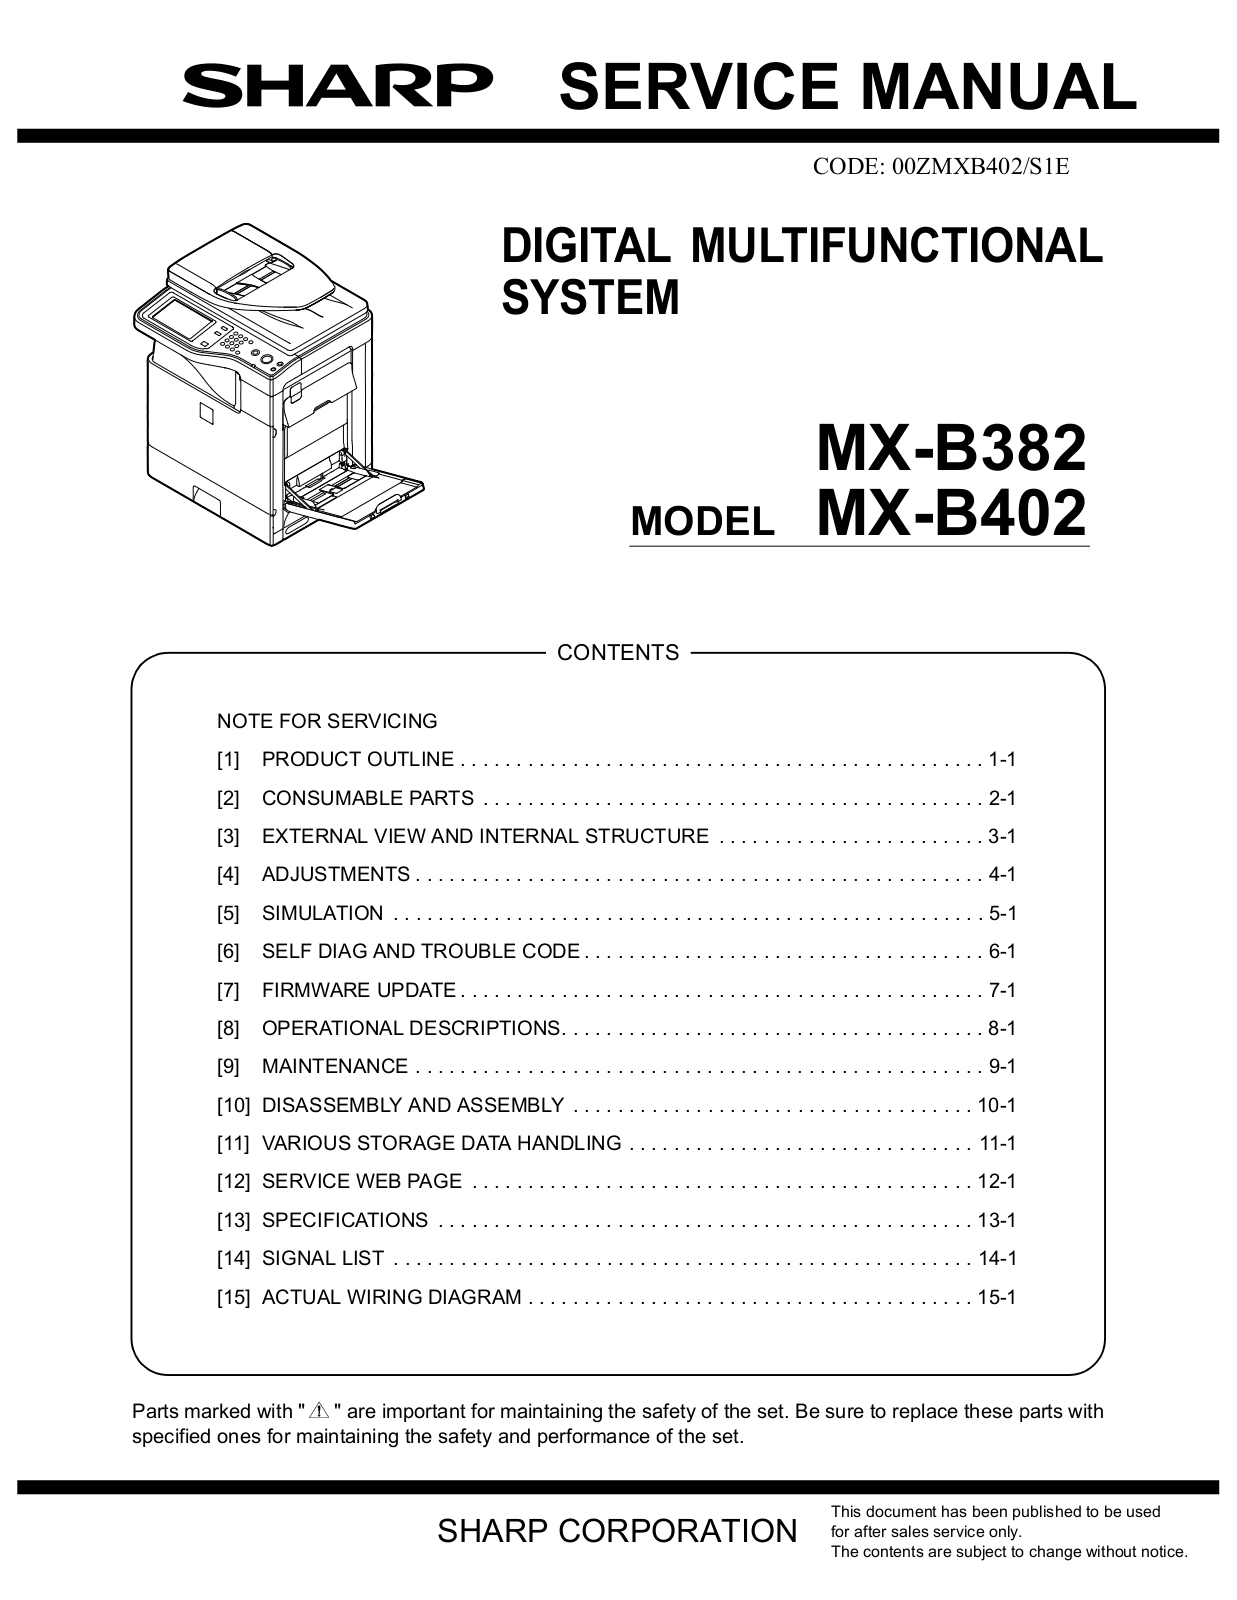 Sharp MX-B382, MX-B402 Service Manual